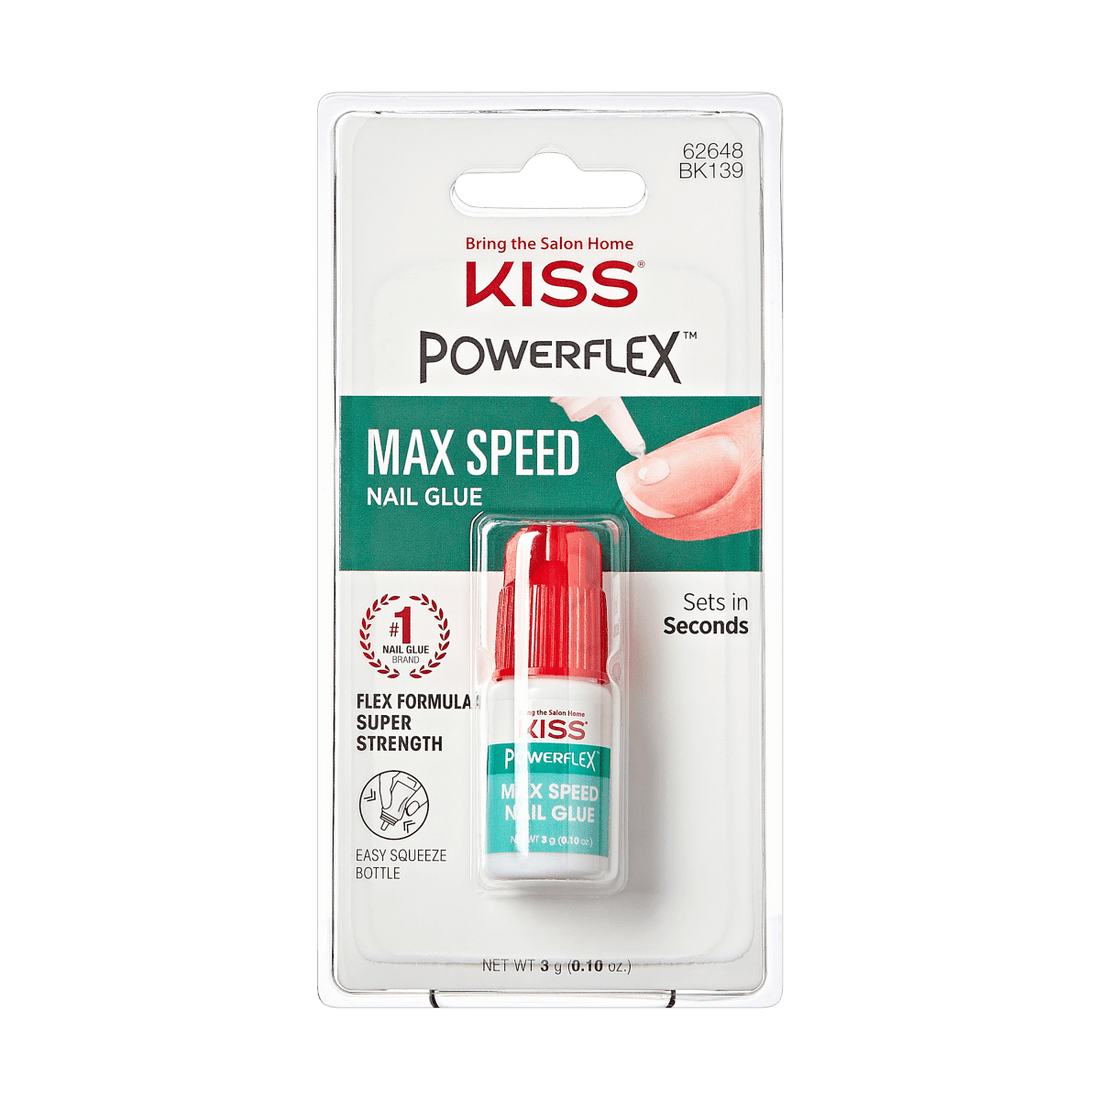 KISS PowerFlex, Max Speed Nail Glue for Press On Nails